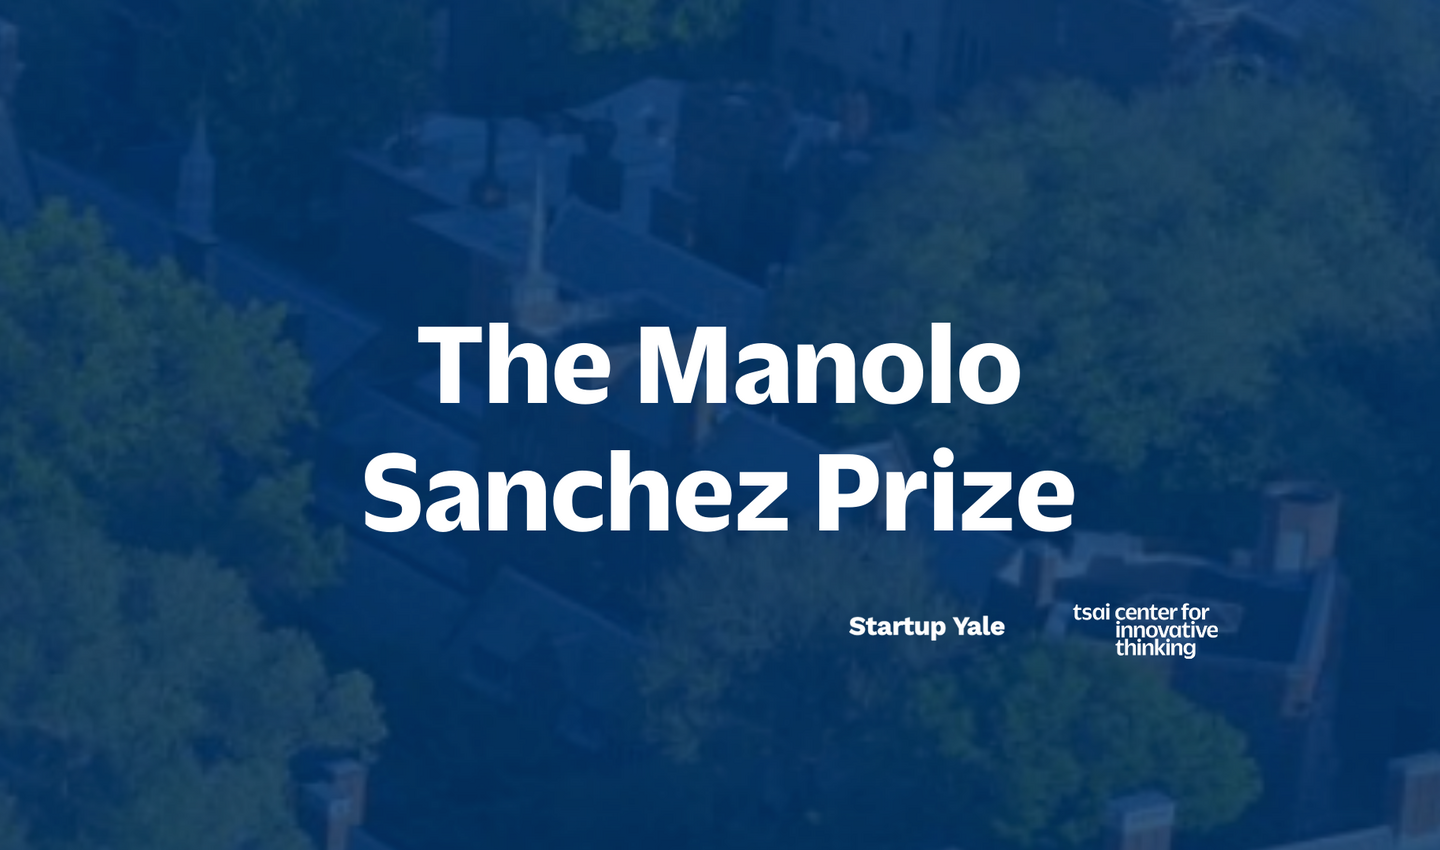 The Manolo Sanchez Prize